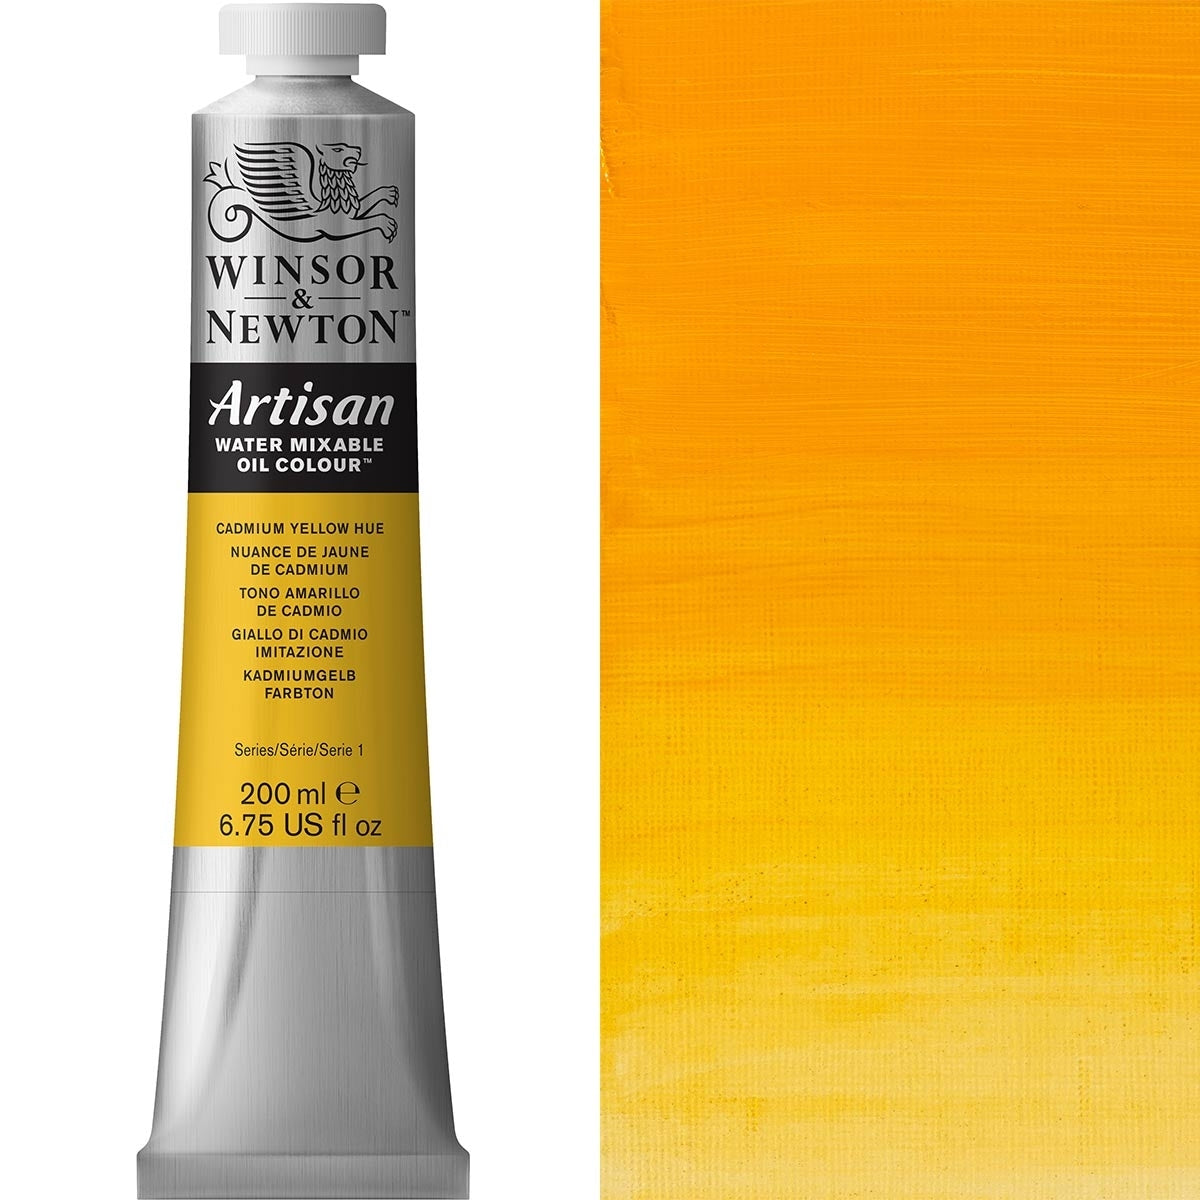 Winsor en Newton - Artisan Oil Color Water Mixable - 200 ml - Cadmium Yellow Hue